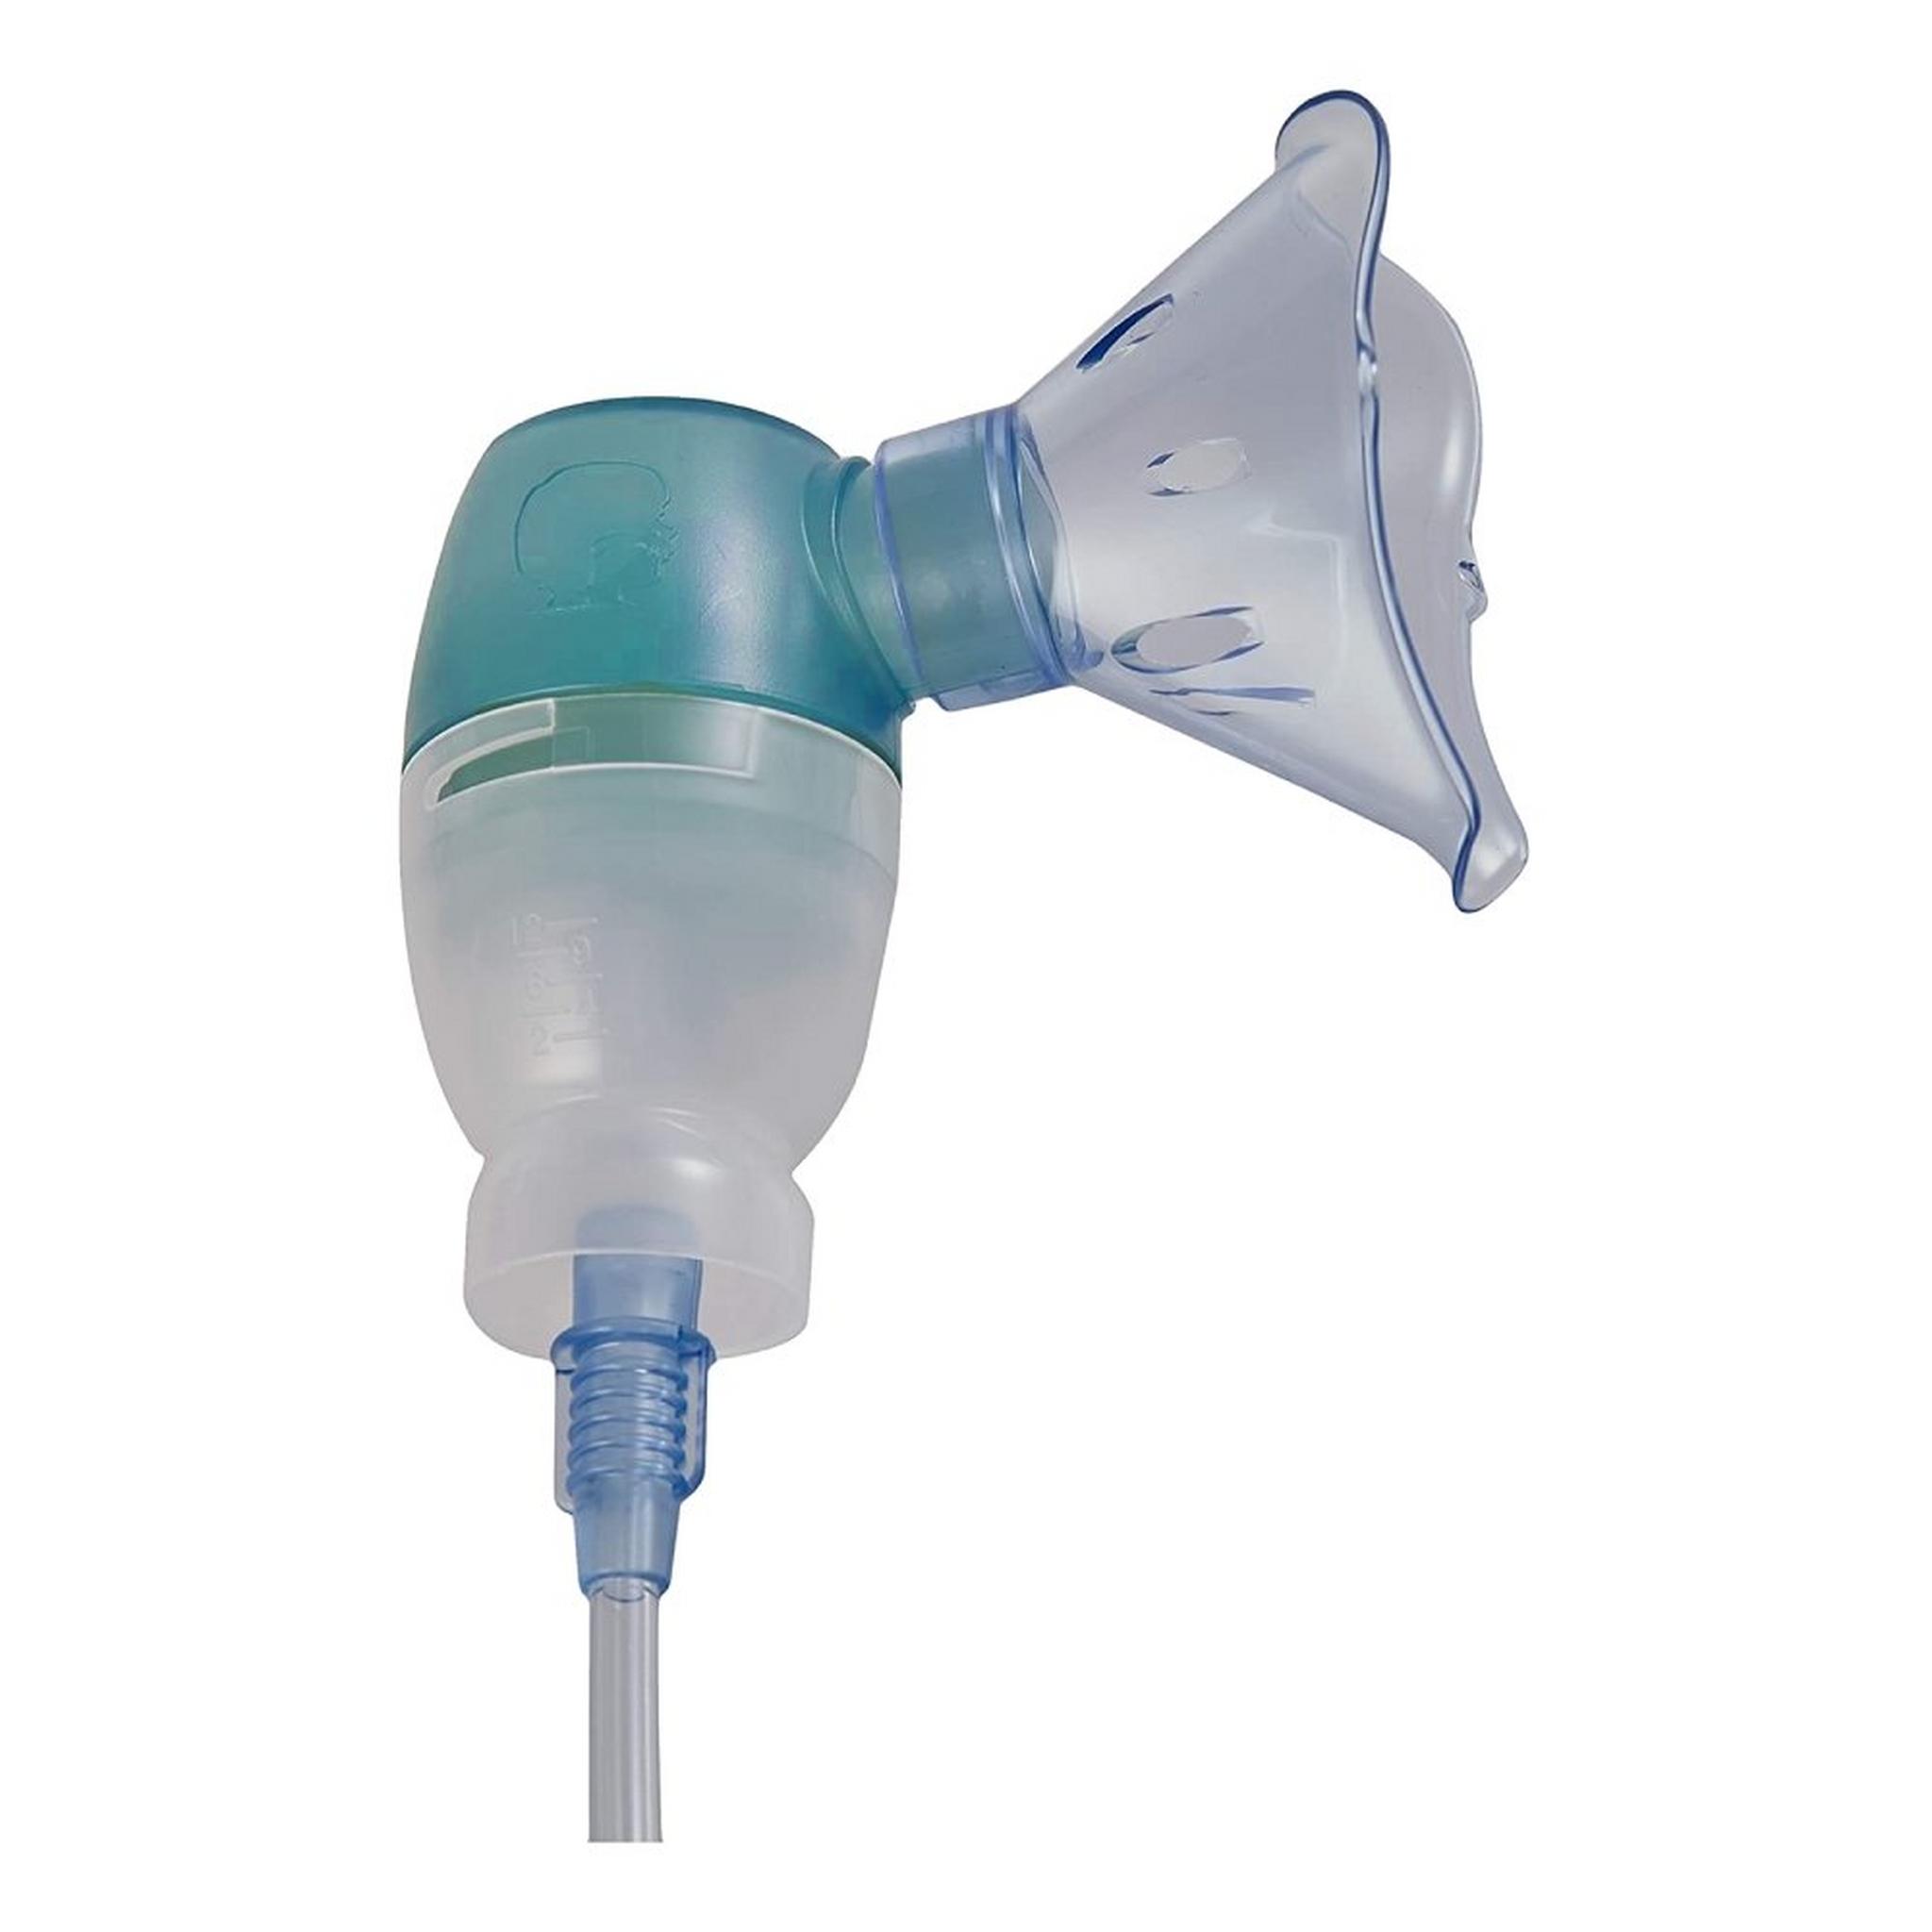 جهاز أمرون ديو بيبي بخاخ تنفس و شفاطة أنف للاطفال ٢ فى ١ - (NE-C301)